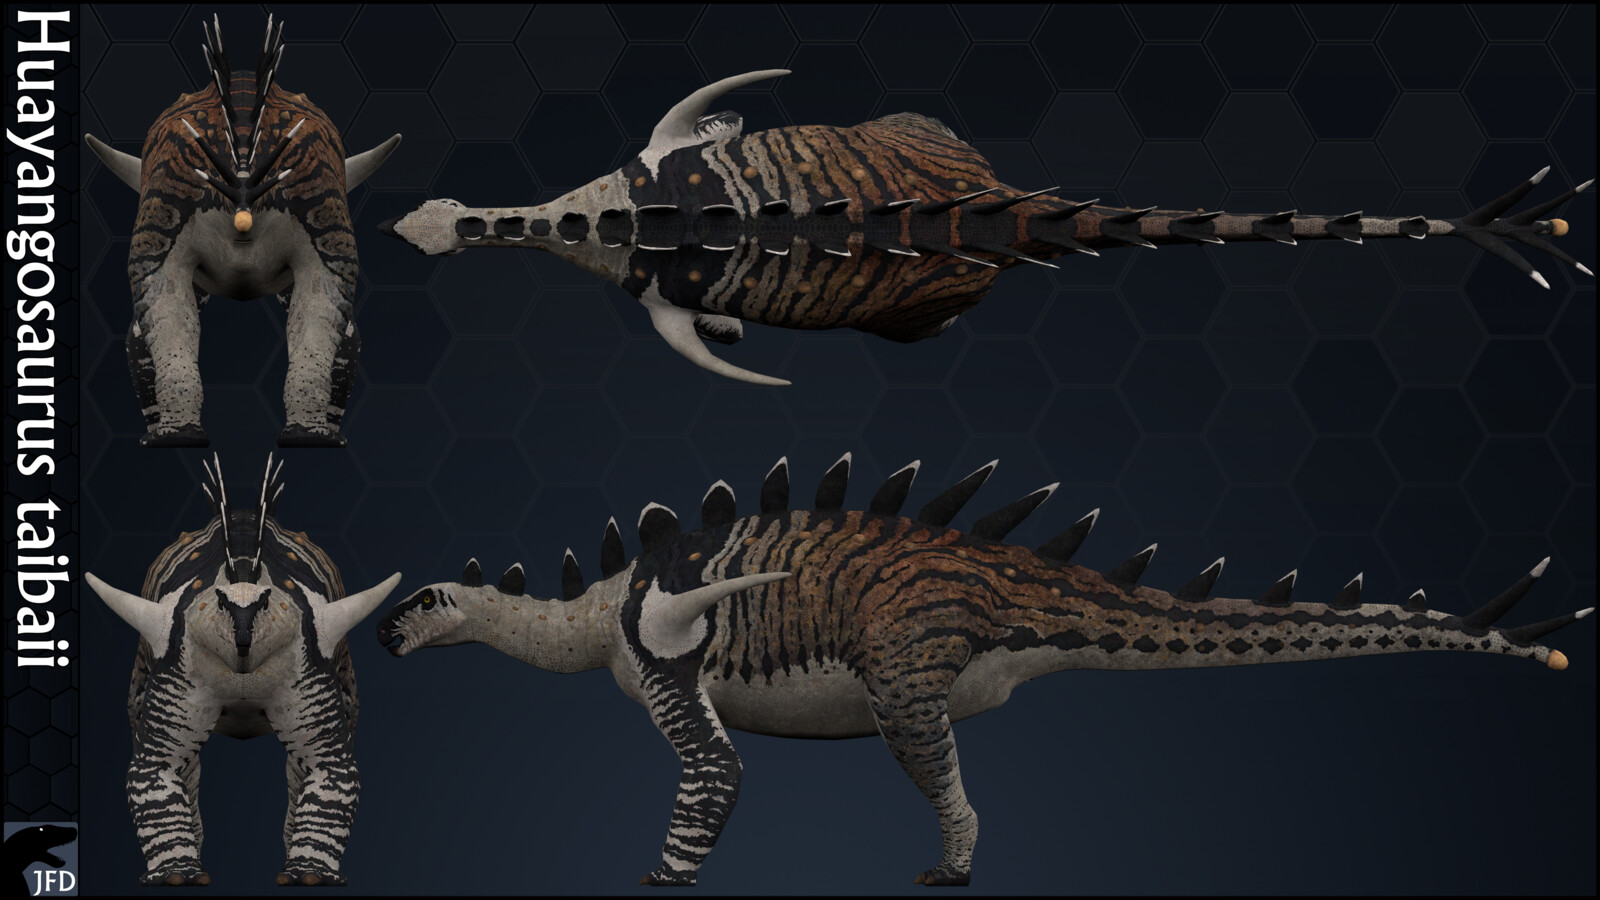 Huayangosaurus taibaii orthographic multi-view render.